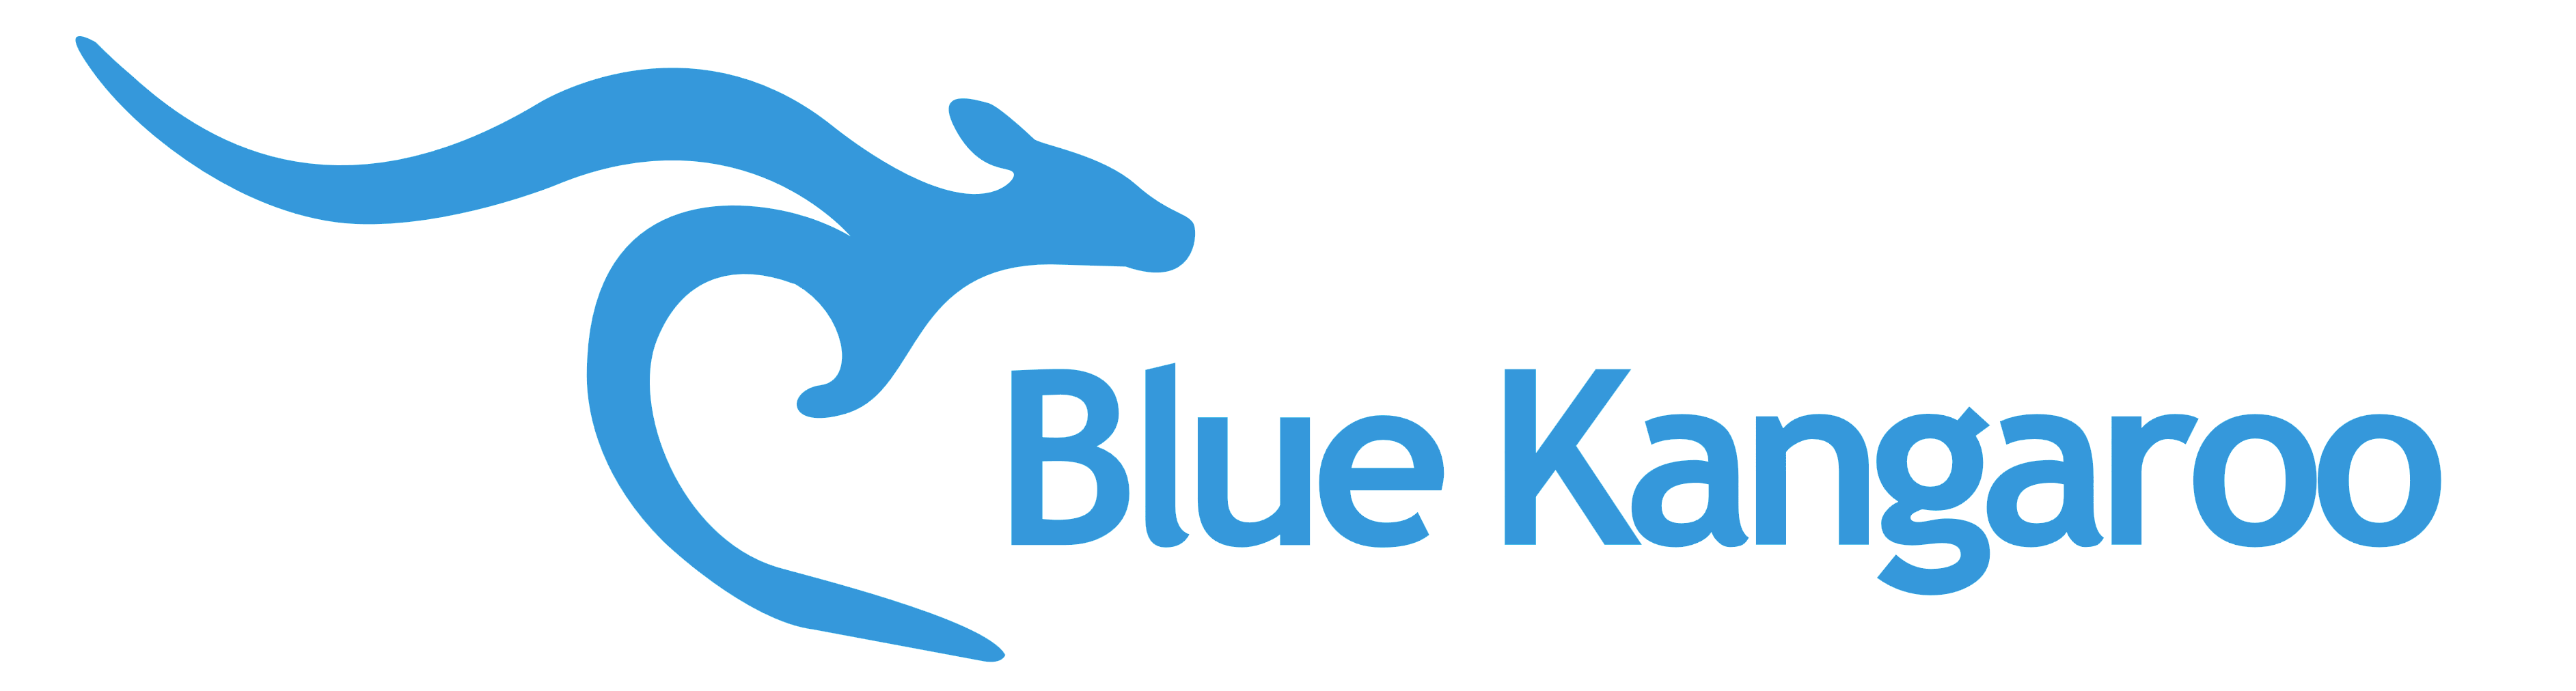 And Symbol with Blue Kangaroo Logo - Blue Kangaroo logo, symbol – Logos Download